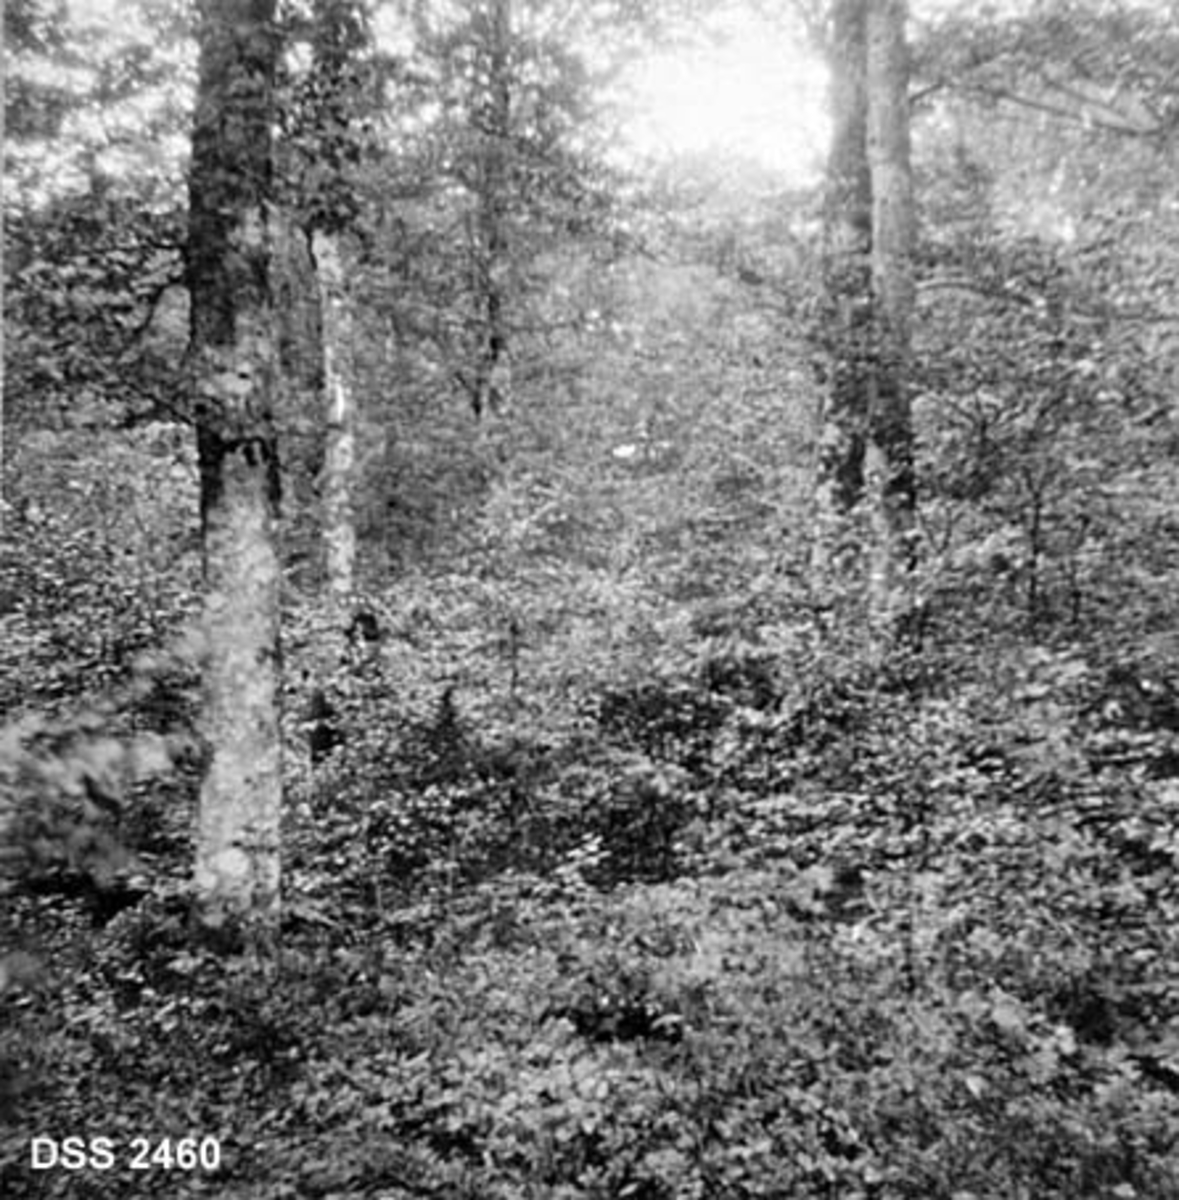 Toaldret bøkebestand i Stokke prestegardsskog. Fotografiet viser store trær med underskog av småtrær og kratt.